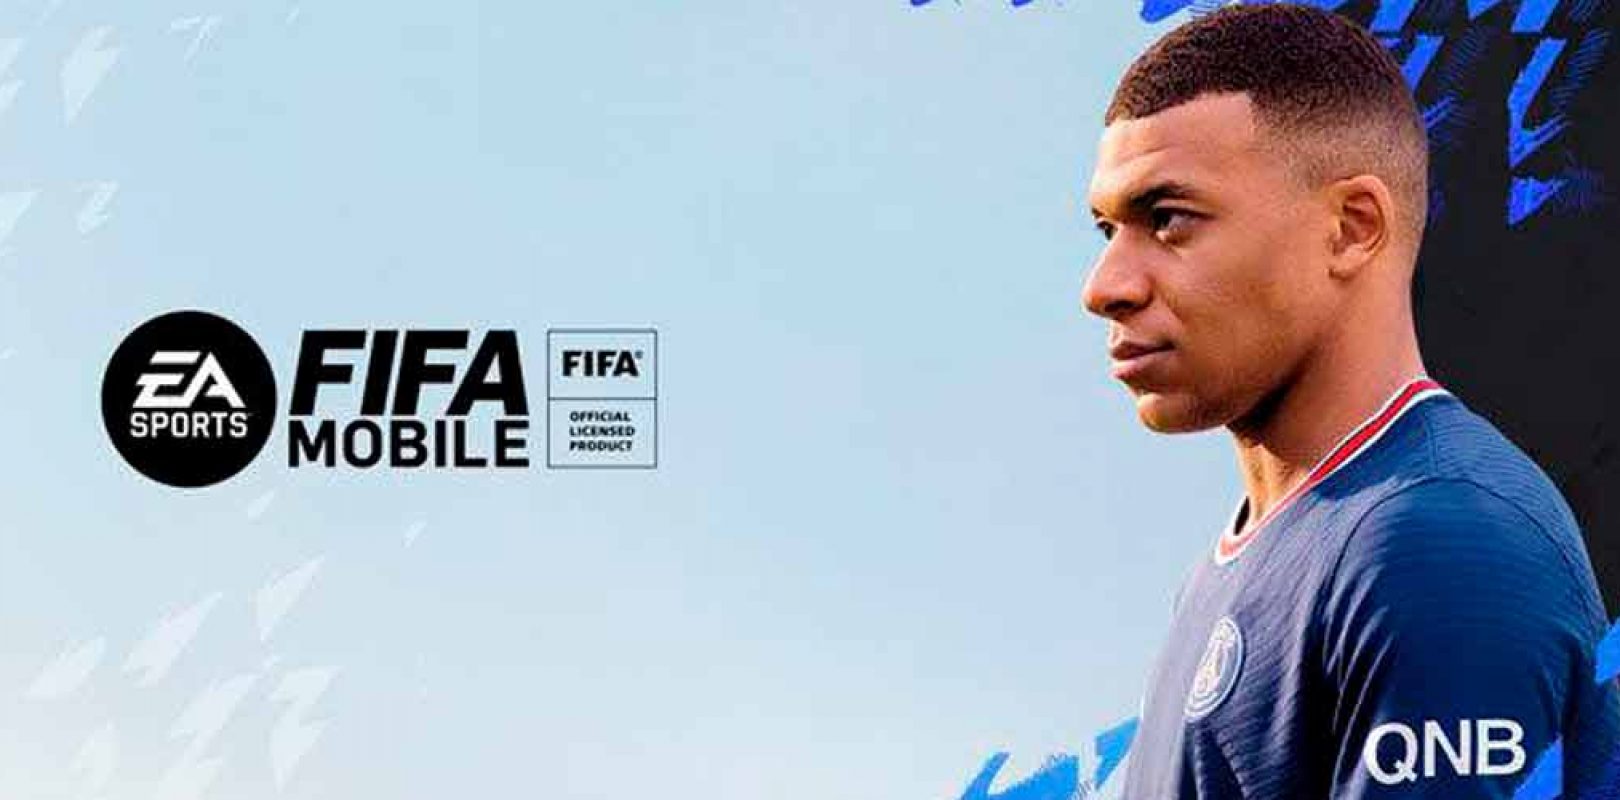 EA SPORTS FIFA MOBILE CELEBRA SU MÁS RECIENTE ACTUALIZACIÓN